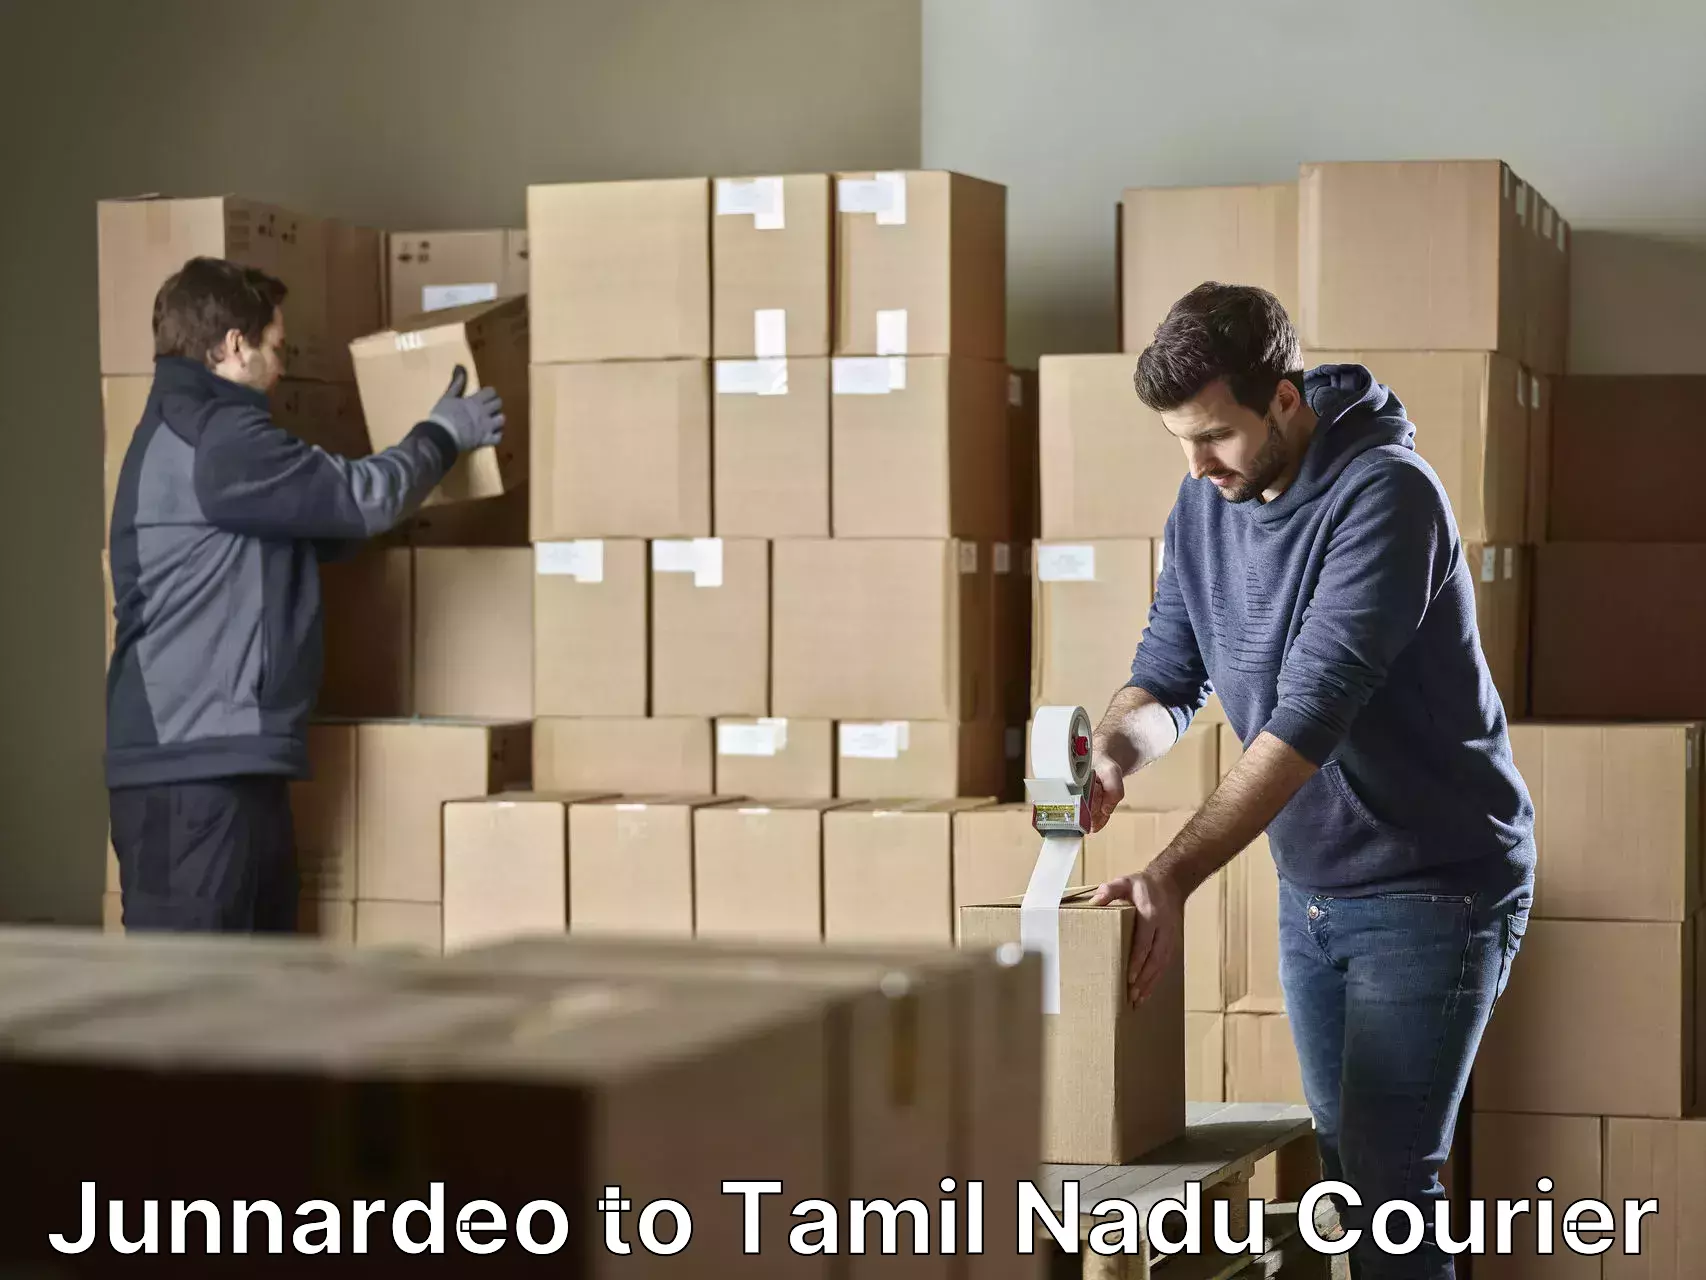 Furniture transport specialists Junnardeo to Tamil Nadu